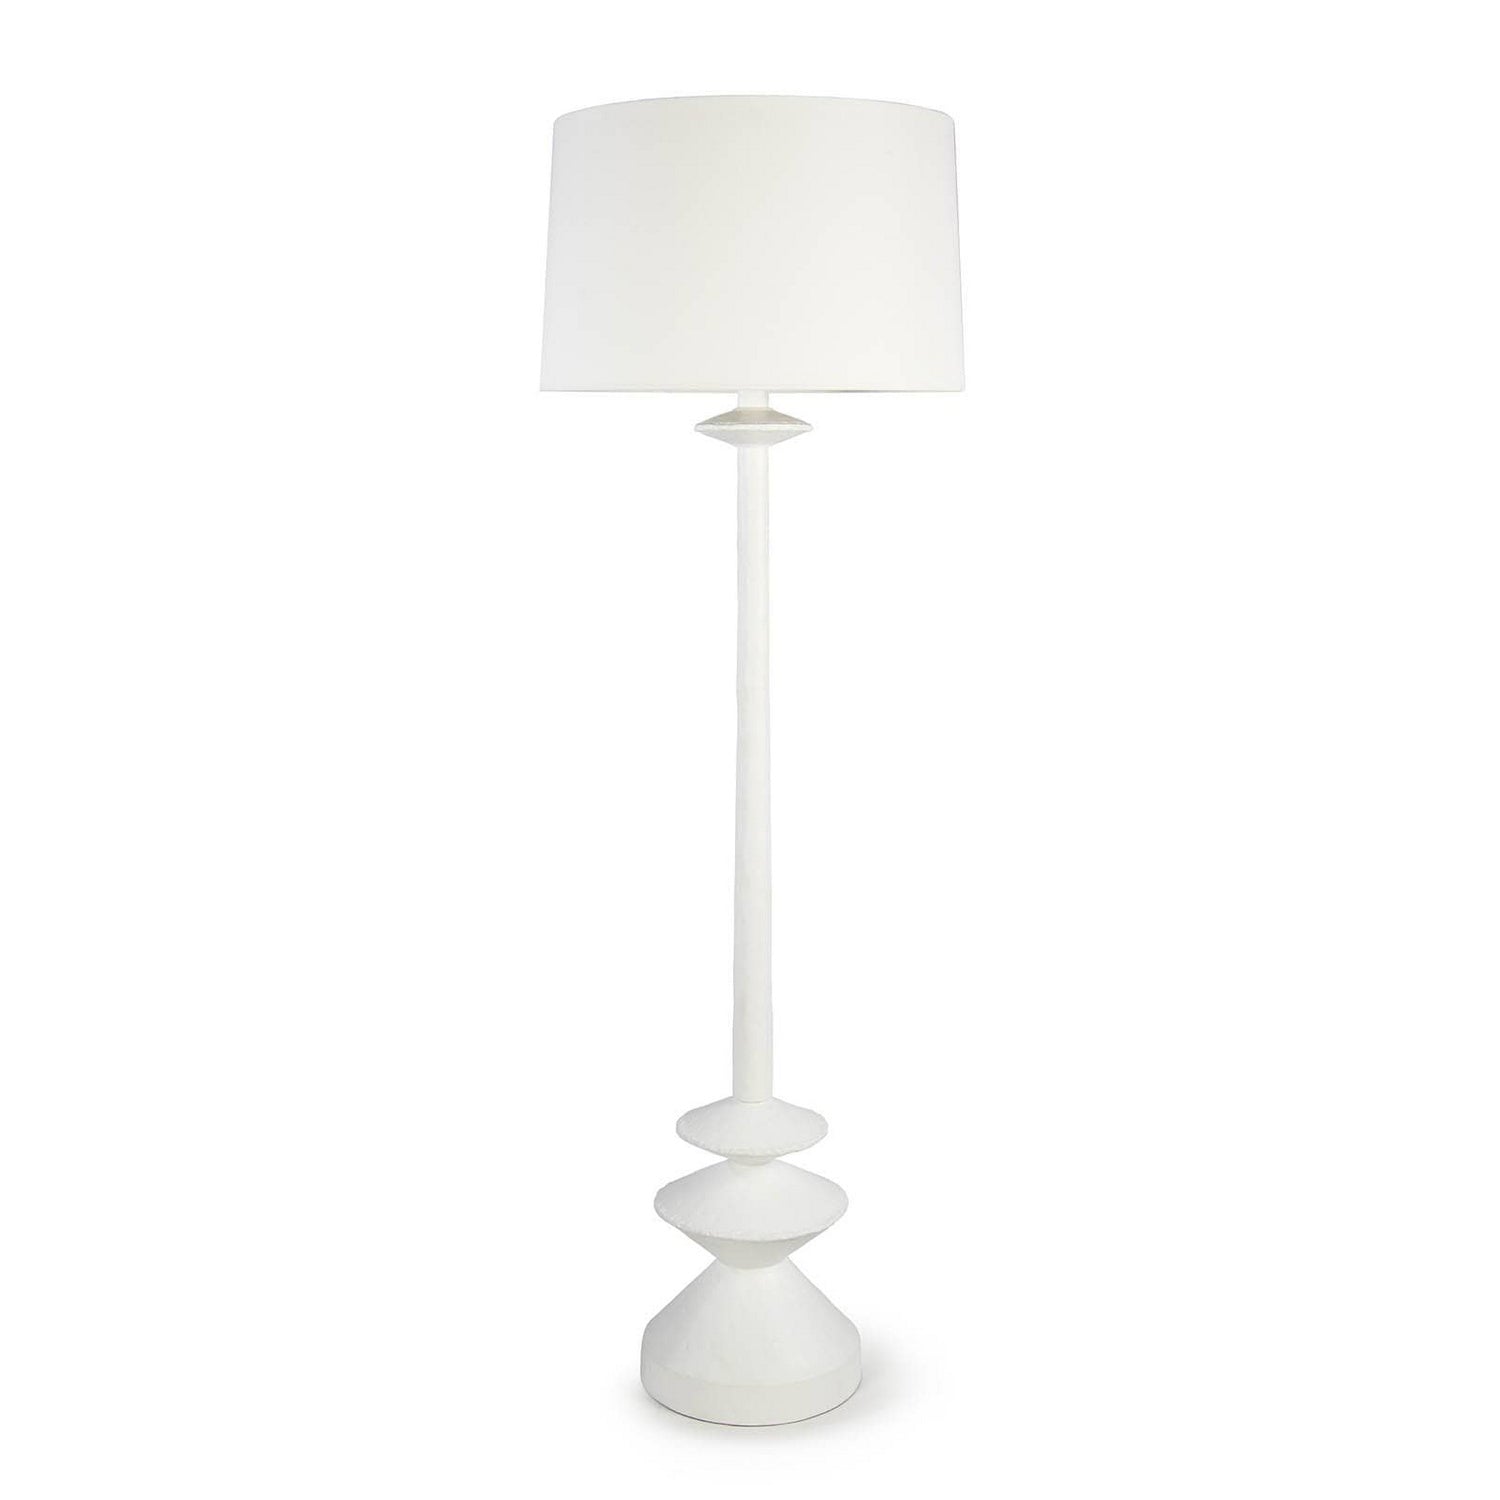 Regina Andrew - 14-1054 - One Light Floor Lamp - Hope - White